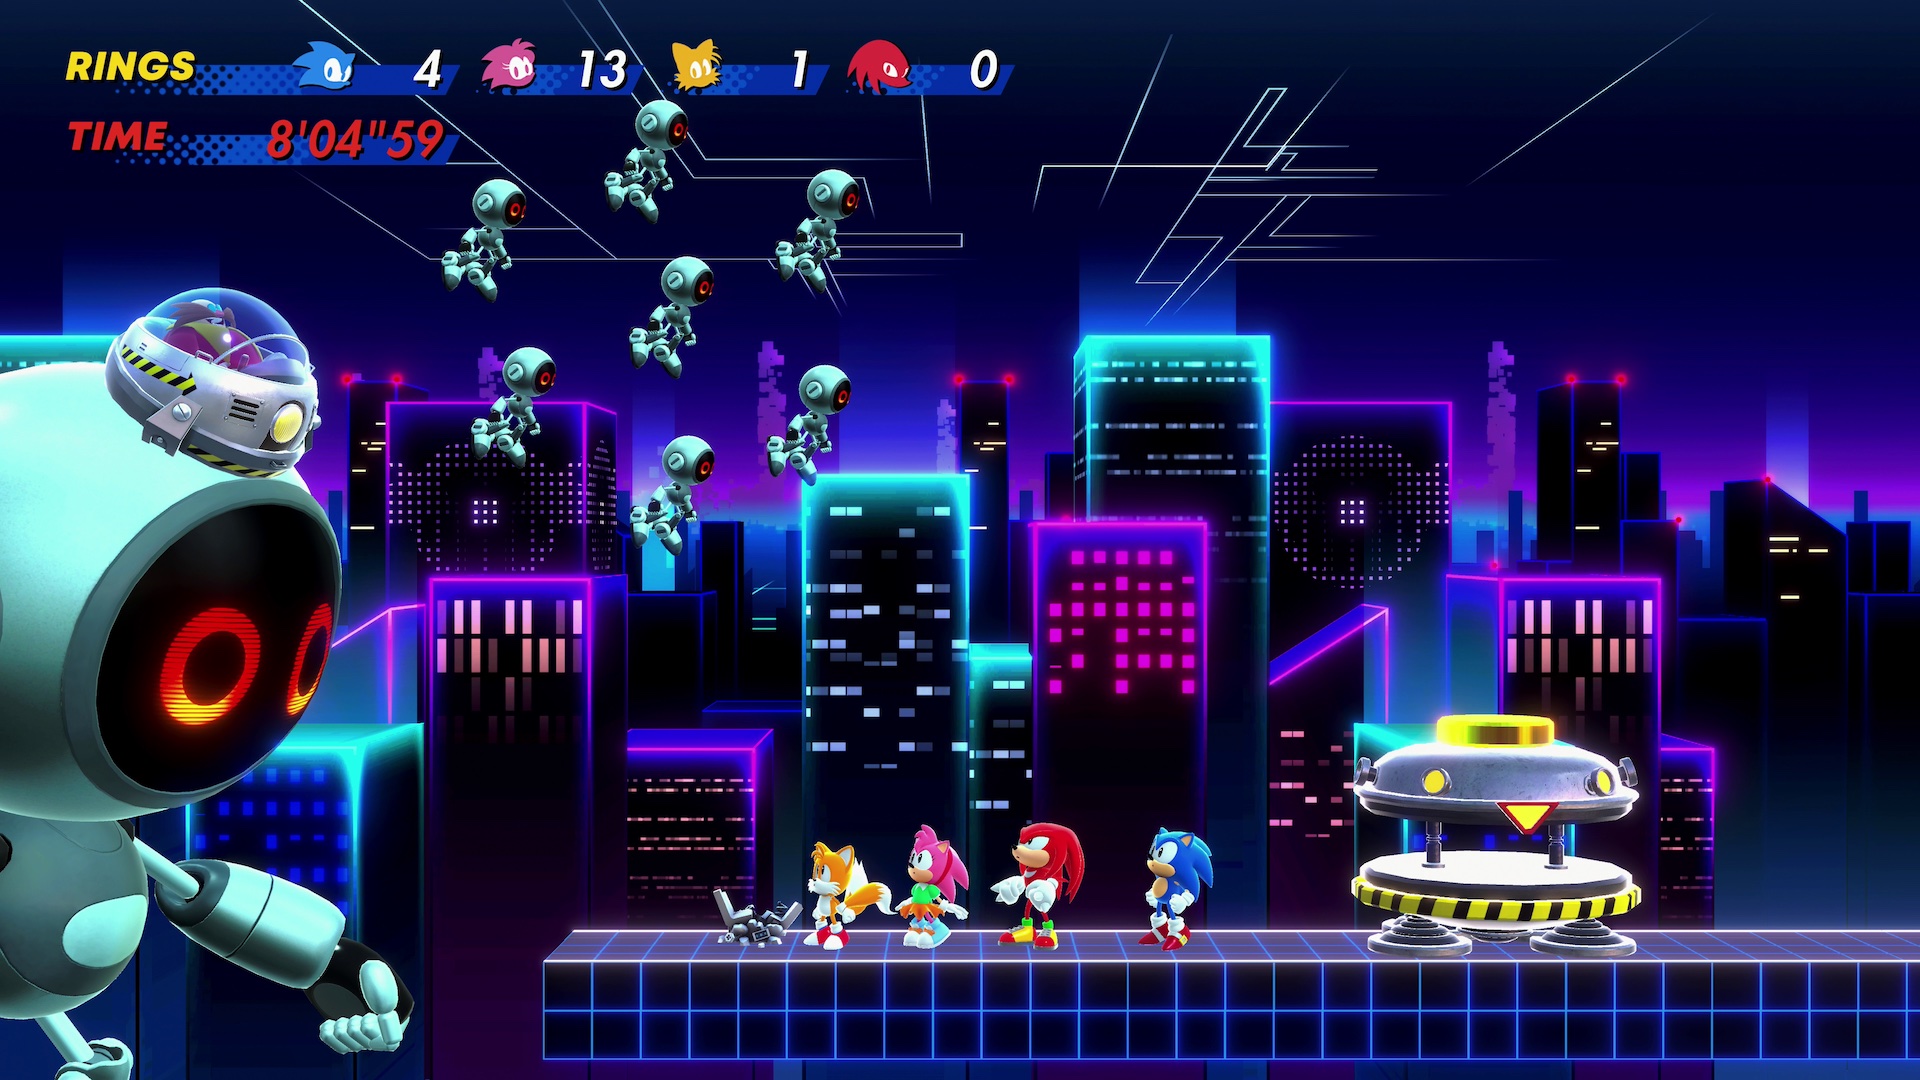 Sega Announces Sonic Superstars, a Brand New 2D Sonic Game - IGN